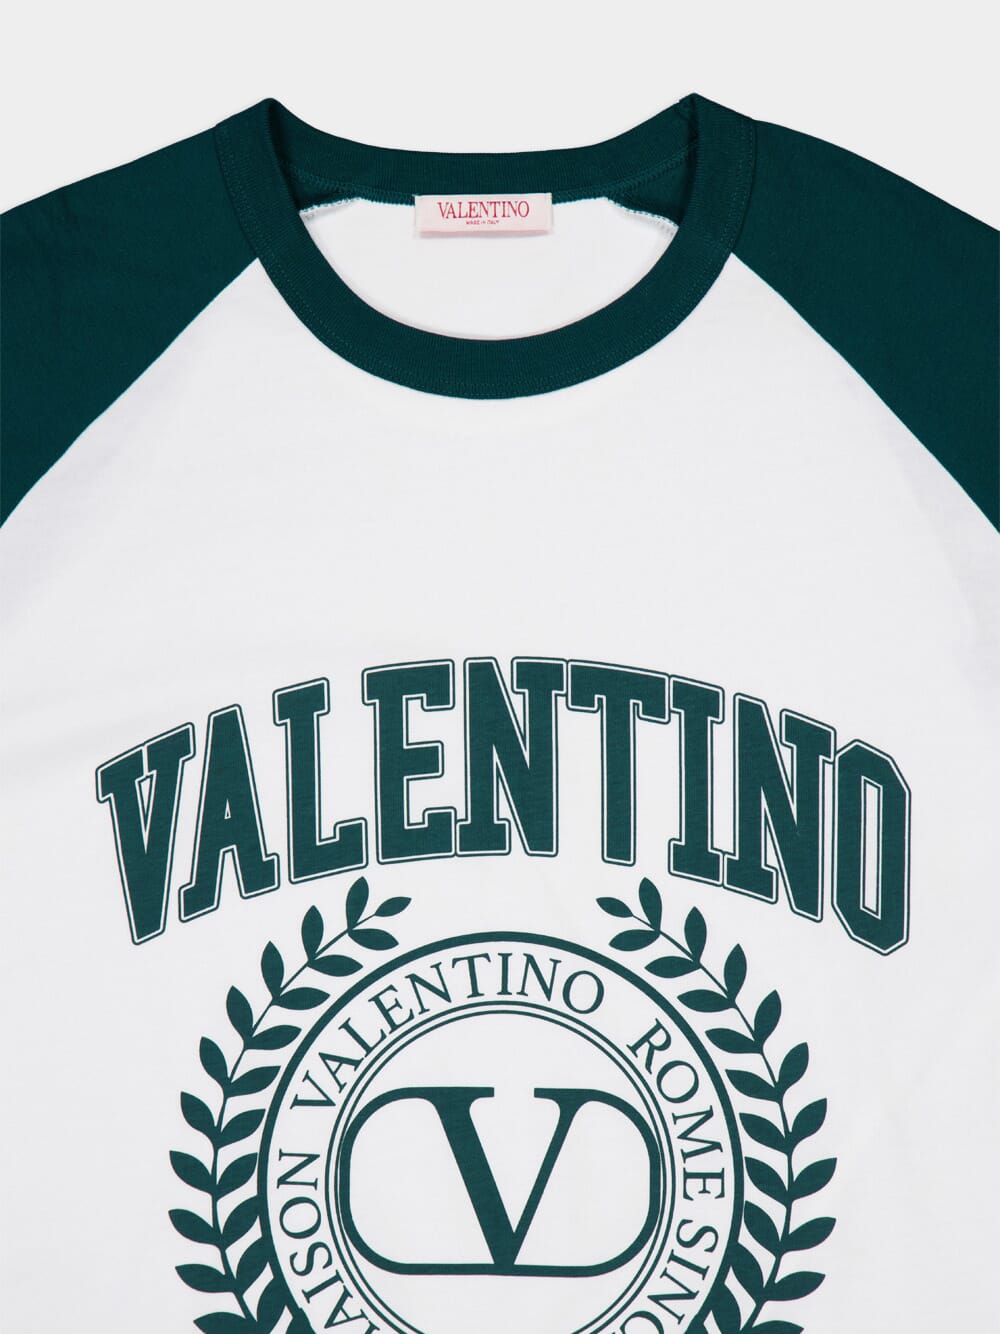 Valentino GaravaniMaison Valentino-Print T-Shirt at Fashion Clinic